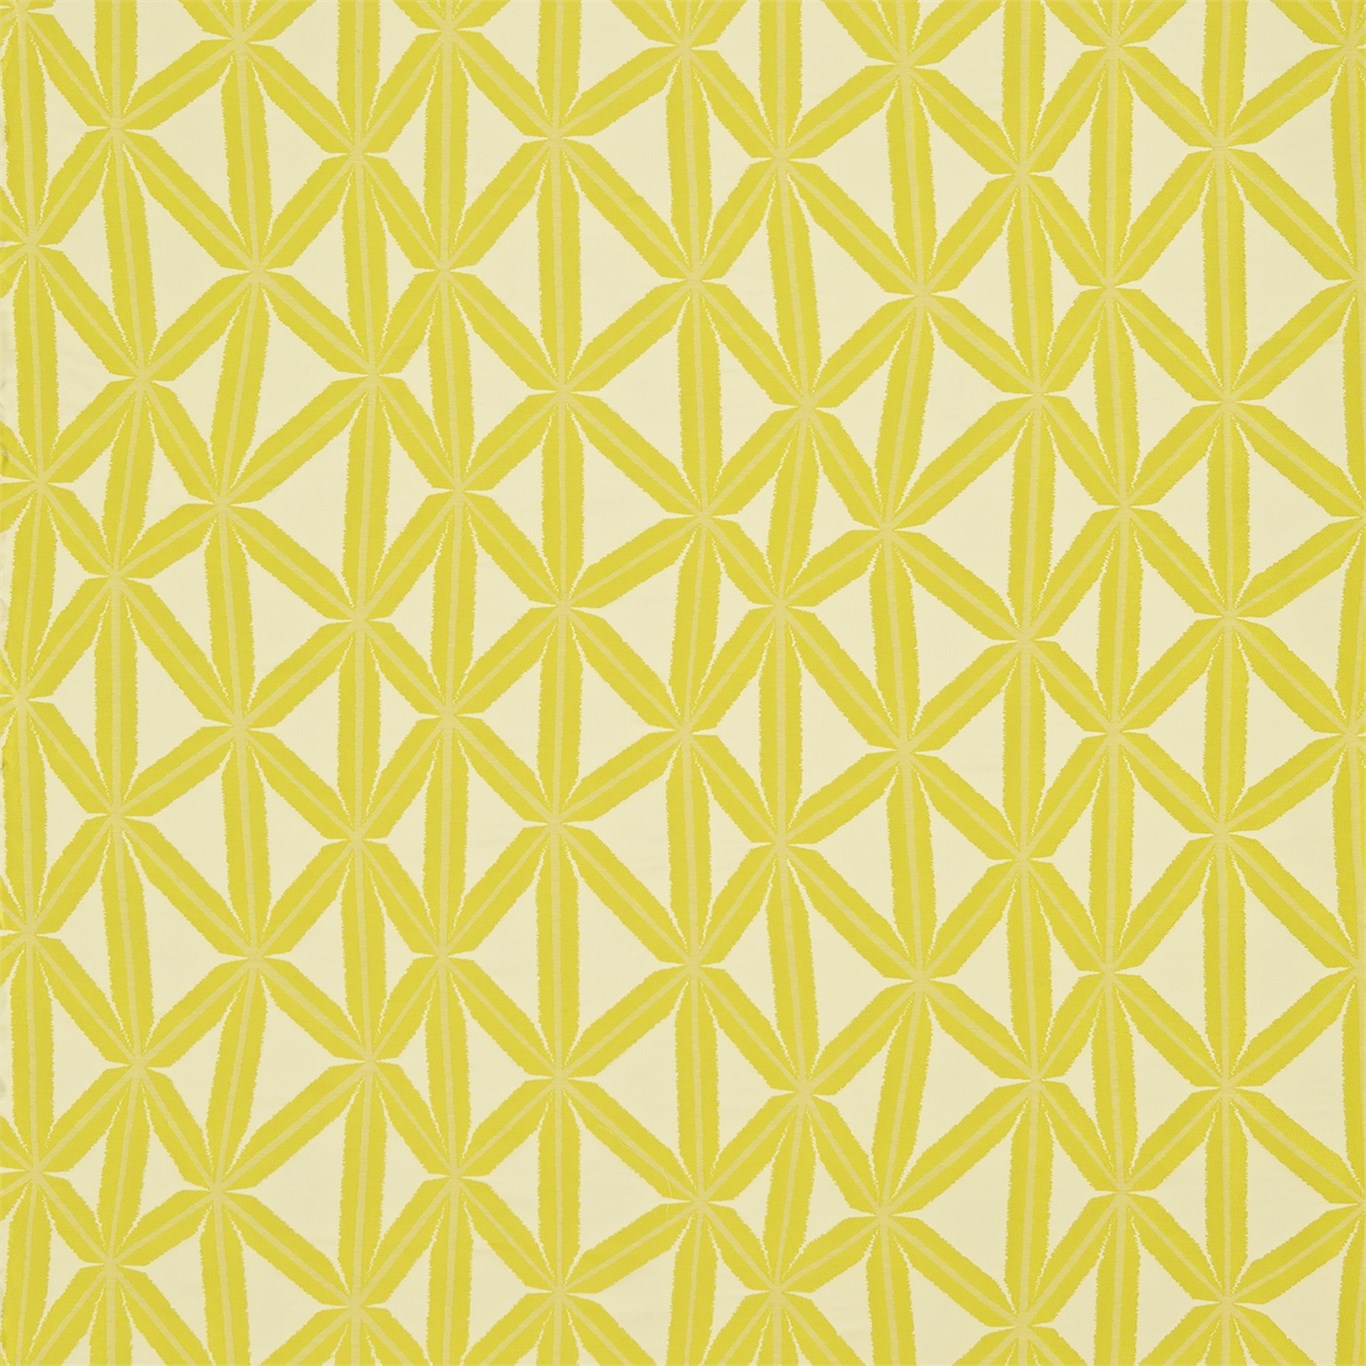 Rumbia Zest/Lemon Fabric by HAR